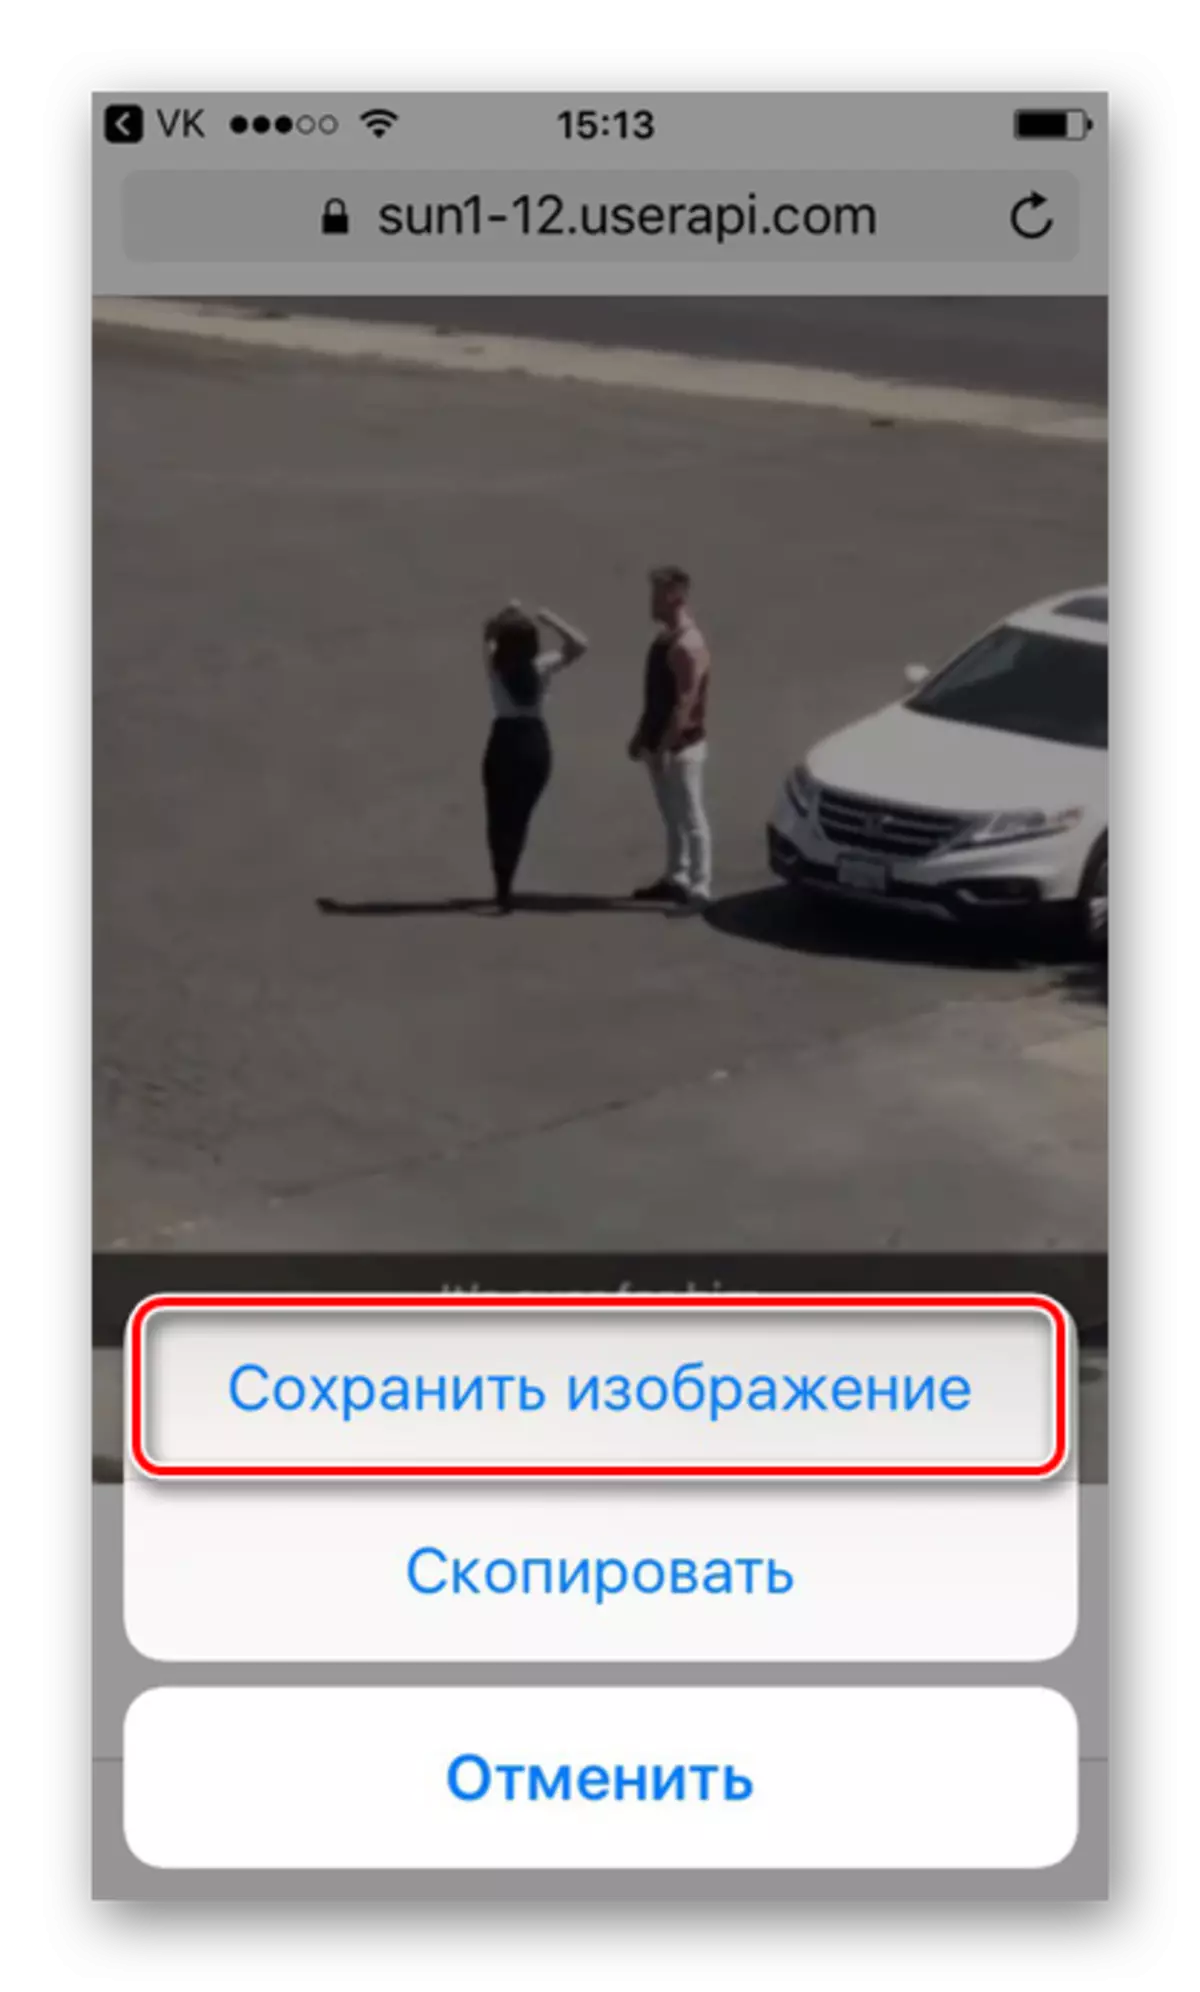 ការរក្សាទុក GIFs ពី vkontakte តាមរយៈកម្មវិធីរុករក Safari នៅលើទូរស័ព្ទ iPhone